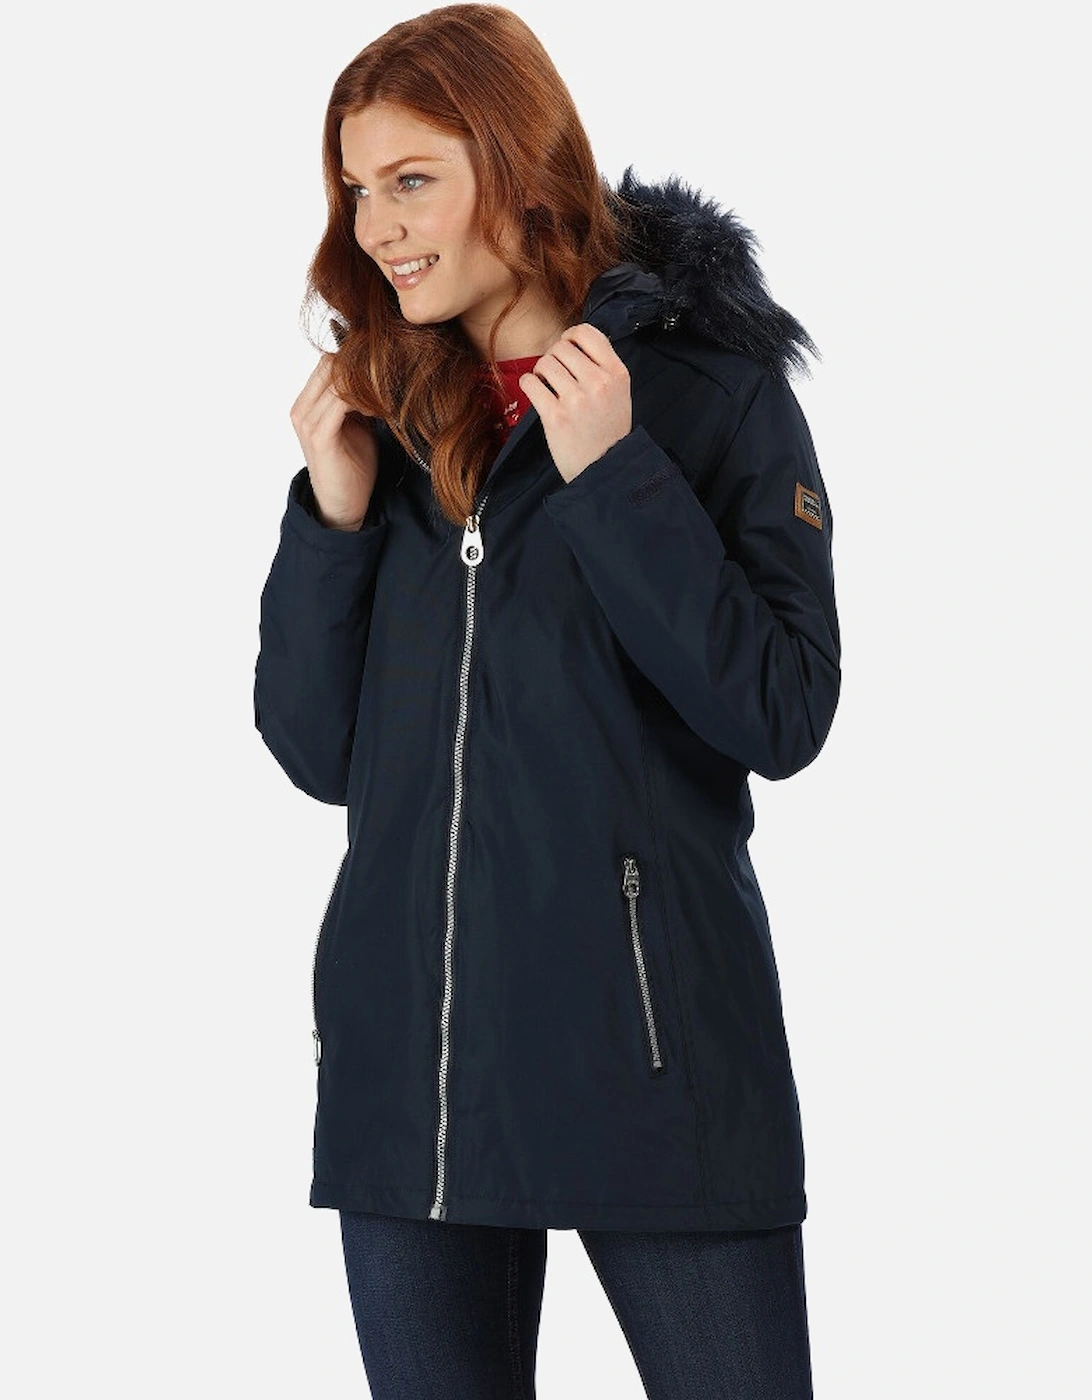 Womens Myla Waterproof Hydrafort Jacket Coat